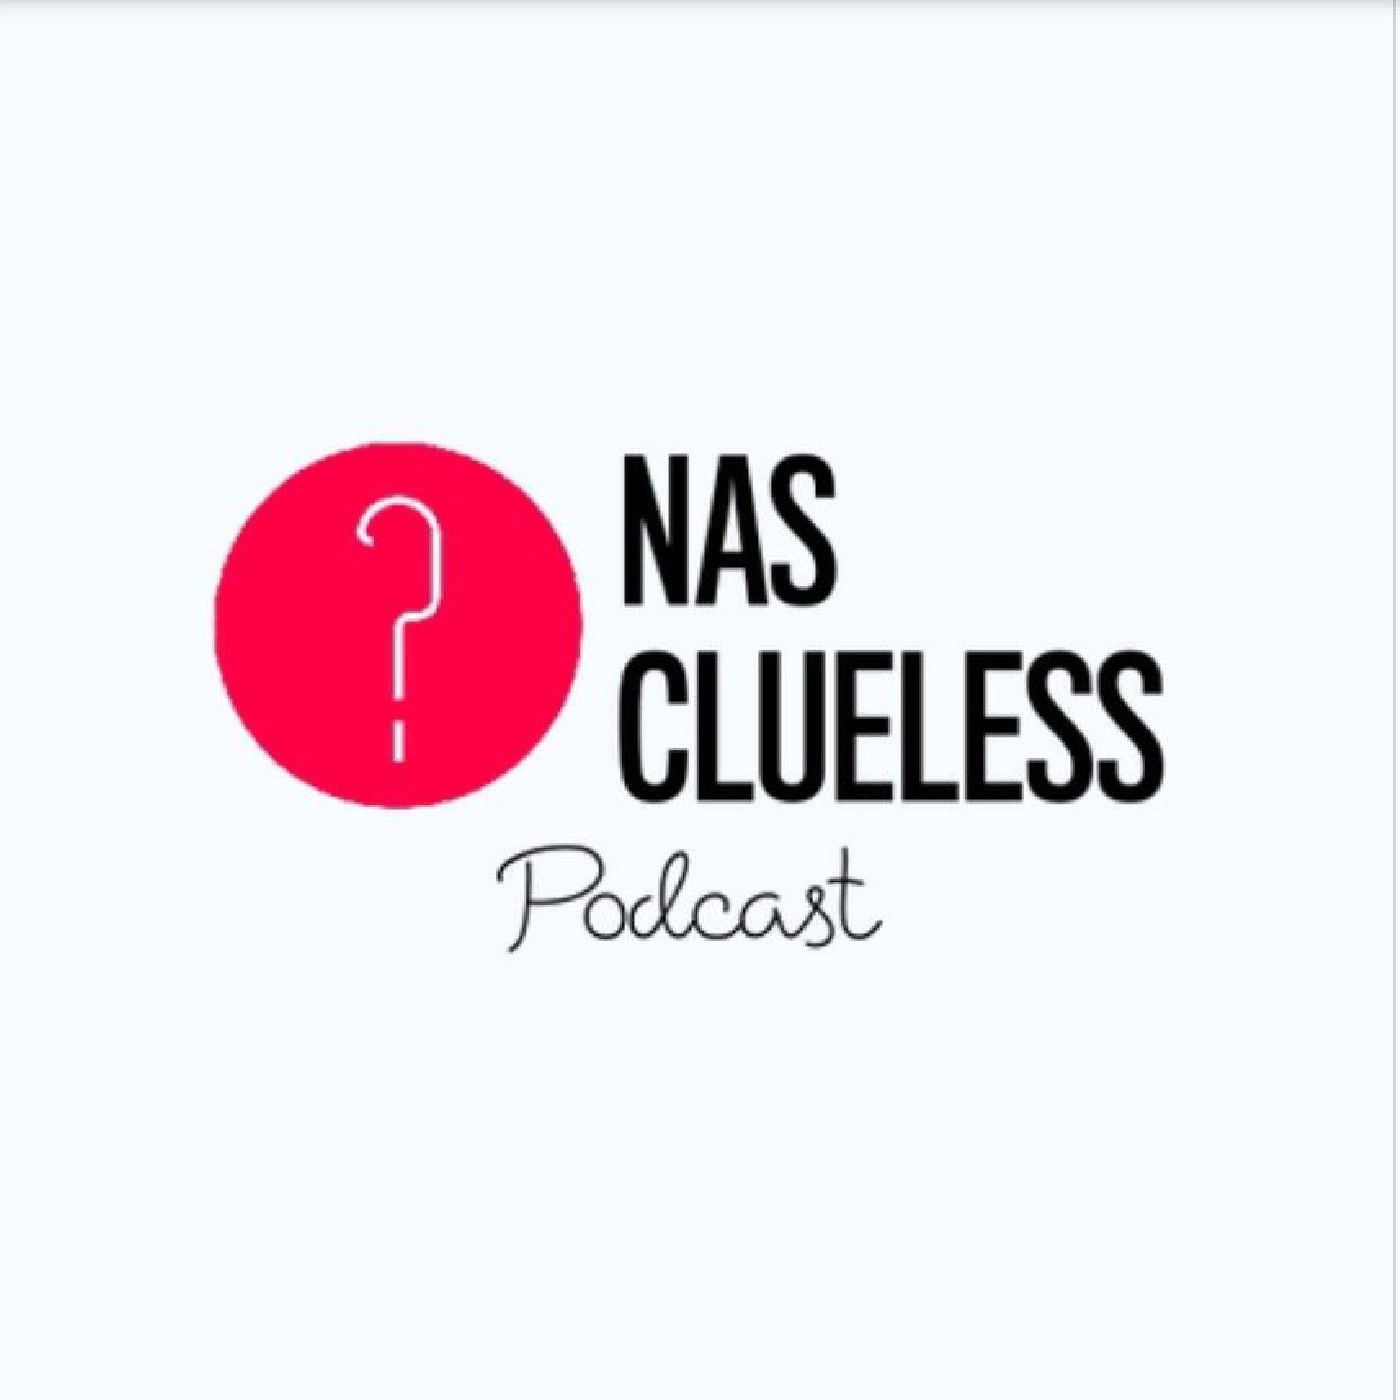 Nas-Clueless's podcast